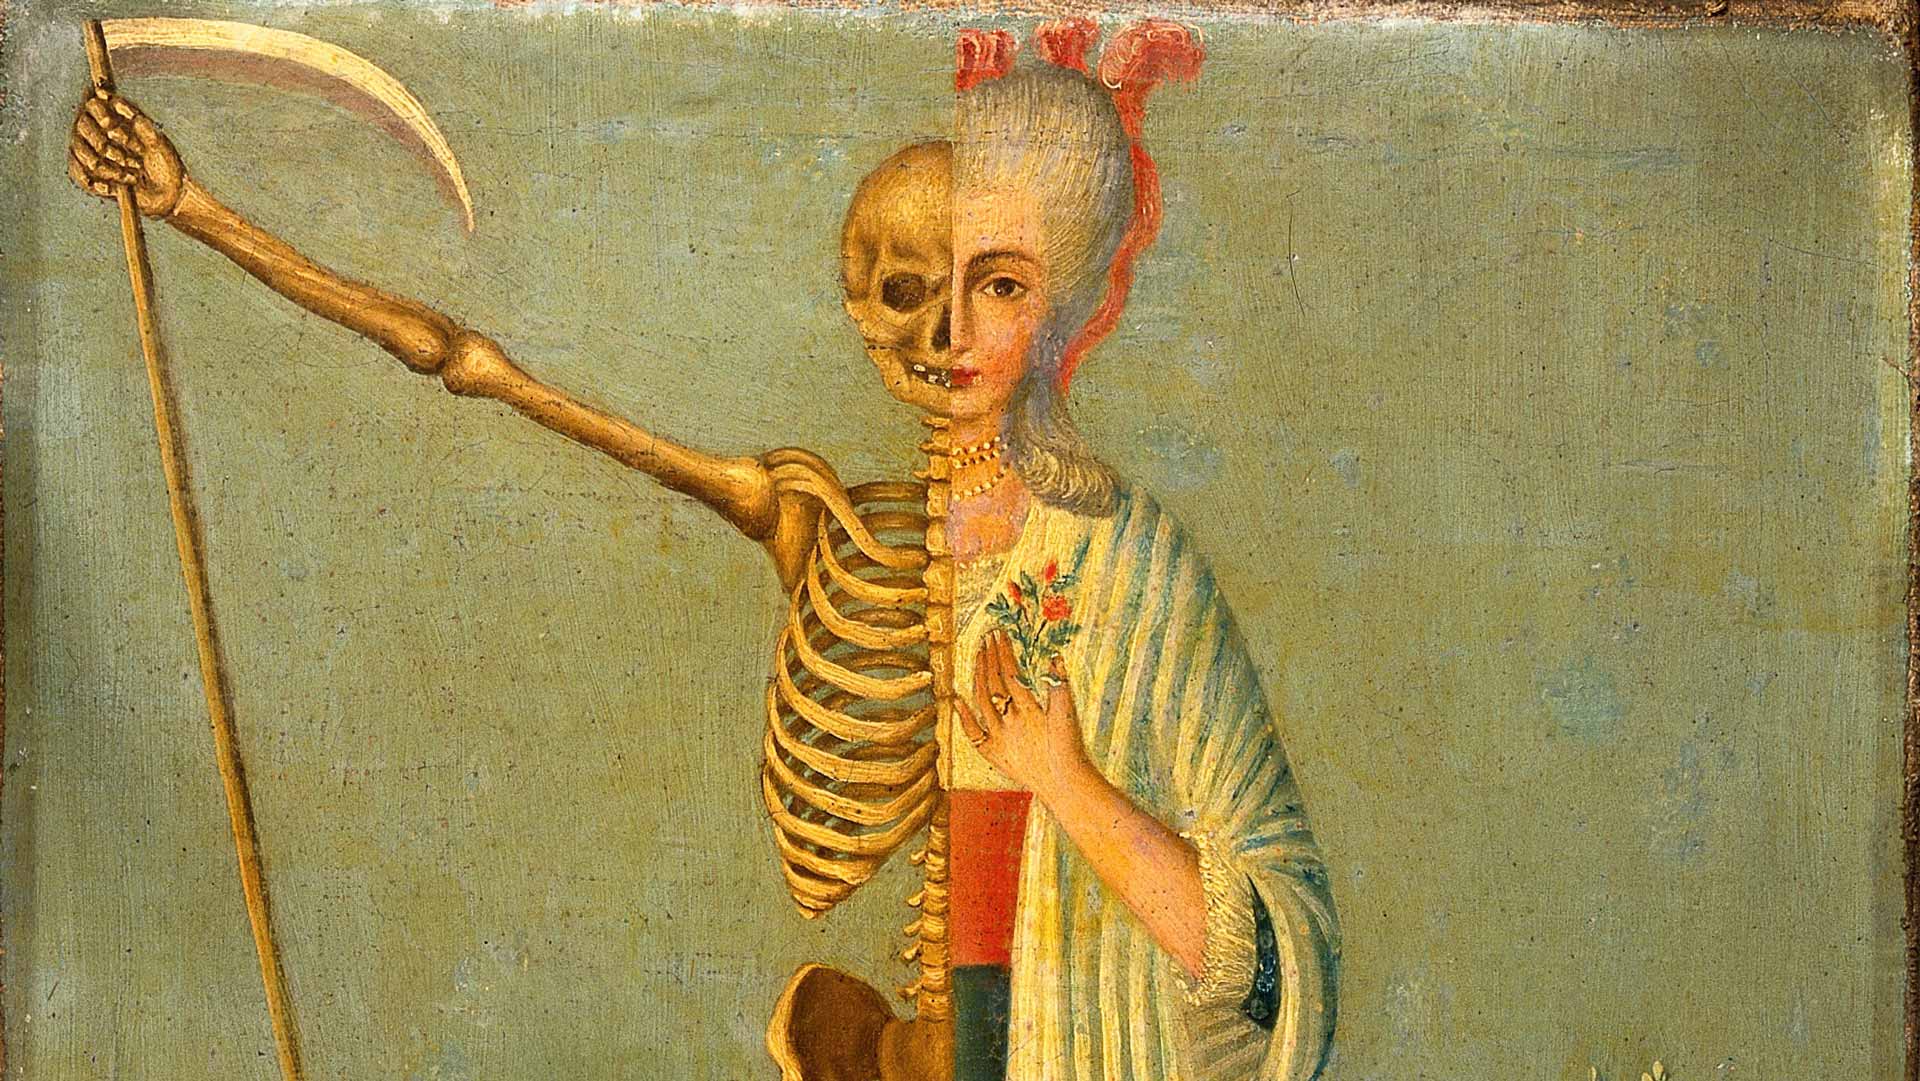 Oficios de la muerte: “Siempre hemos vivido en conexión con los muertos»